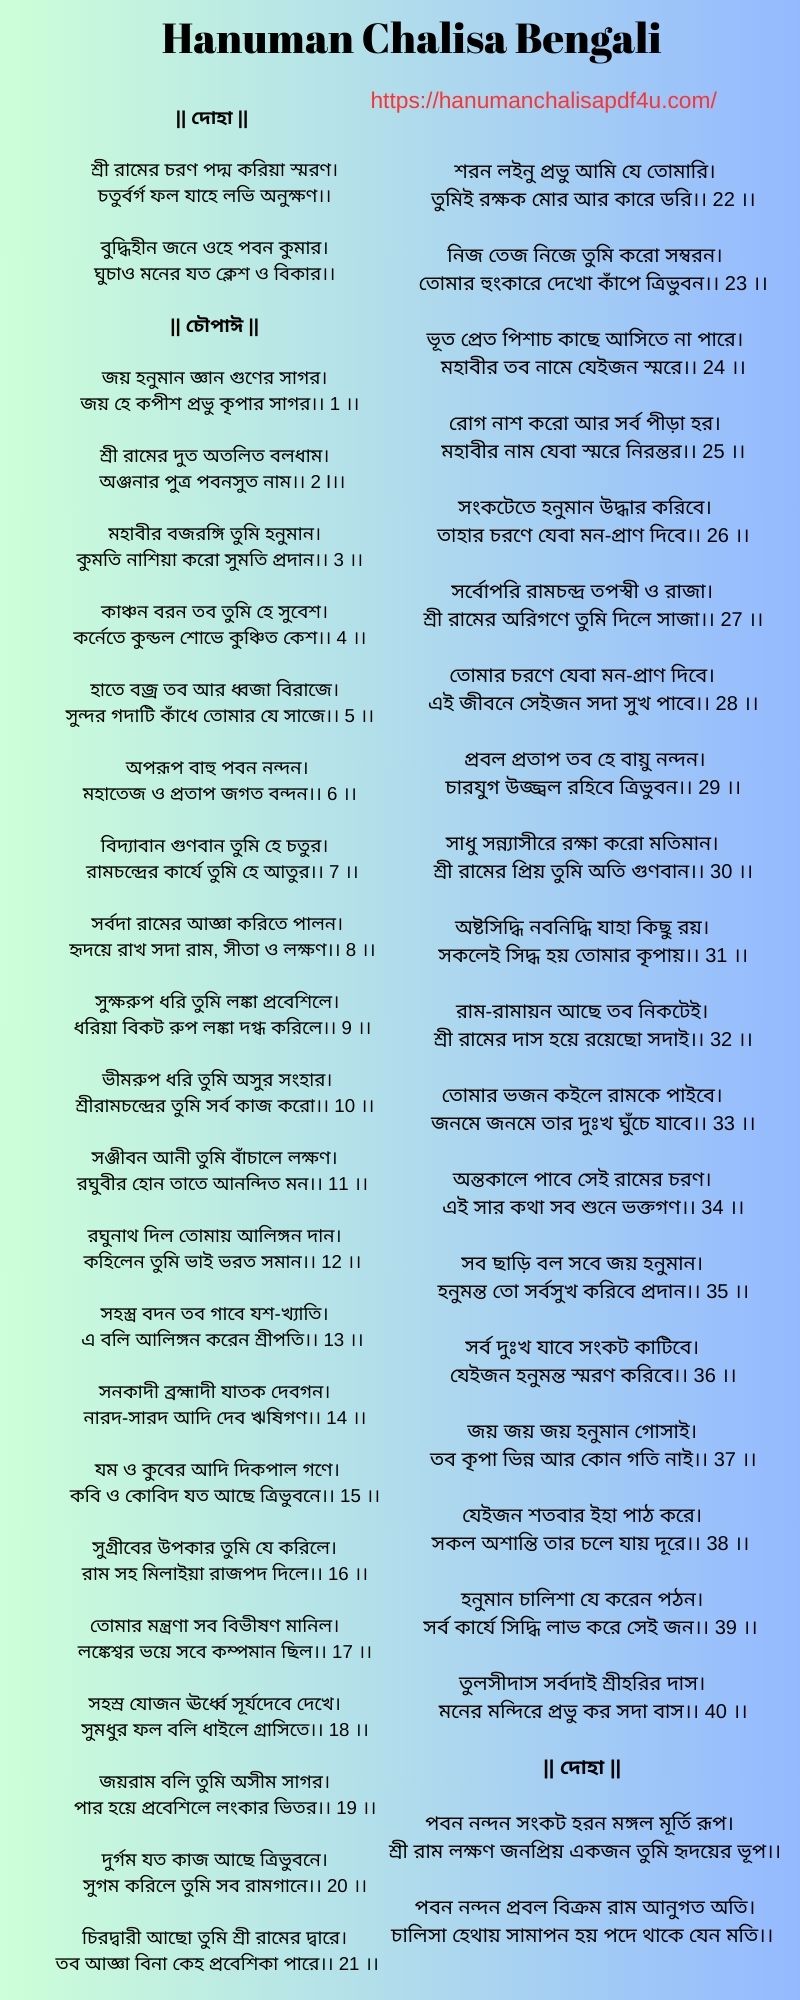 Download Hanuman Chalisa Image in Bengali